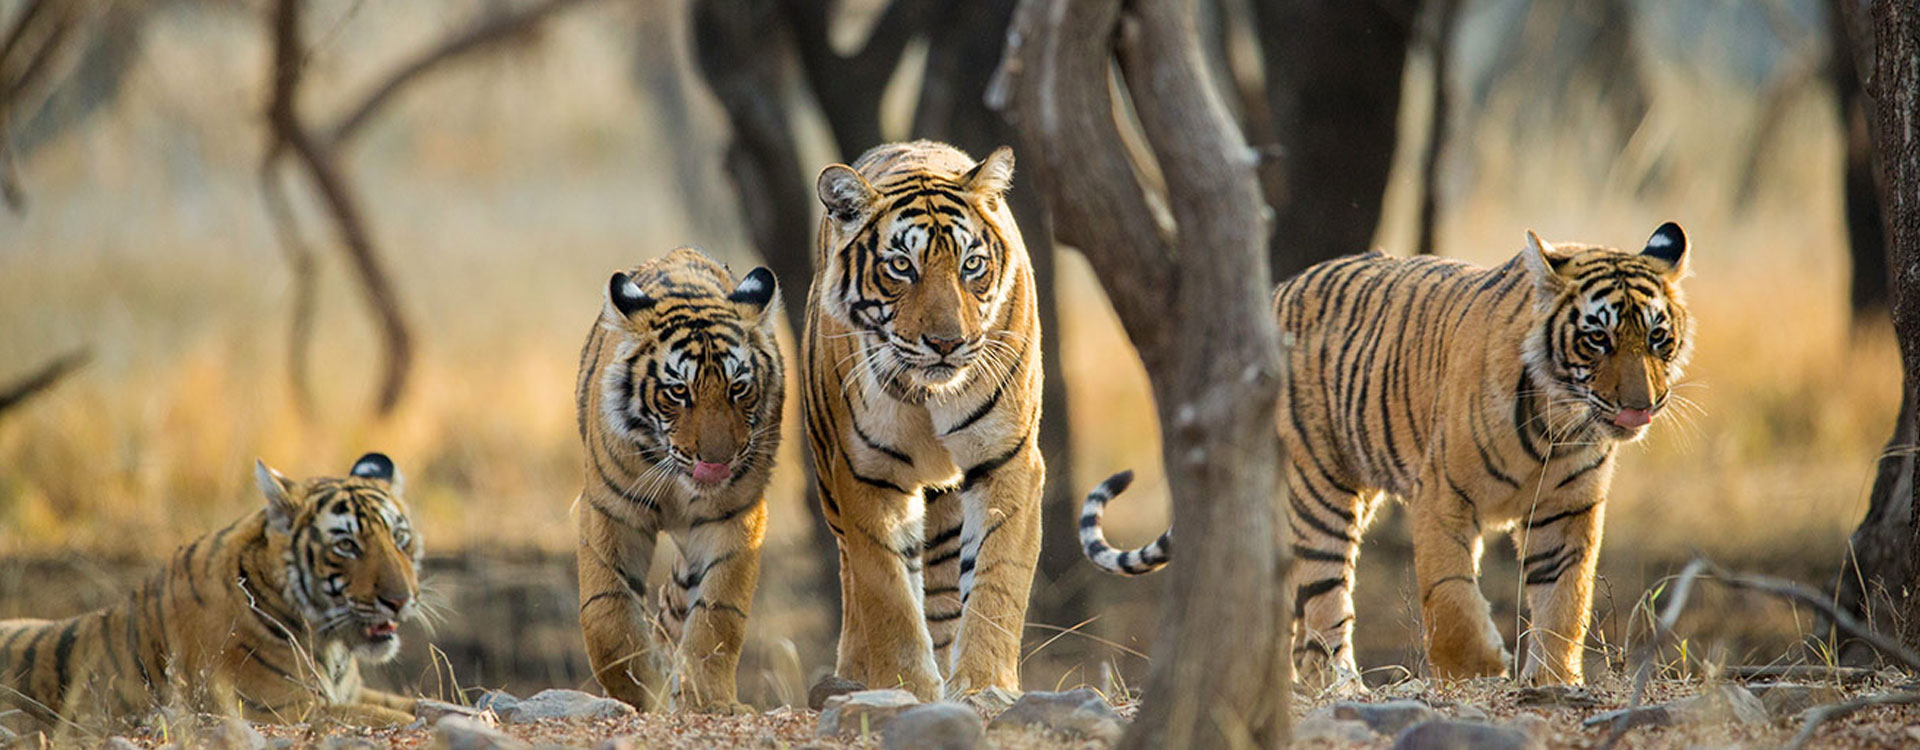 Tiger Rajasthan Tour